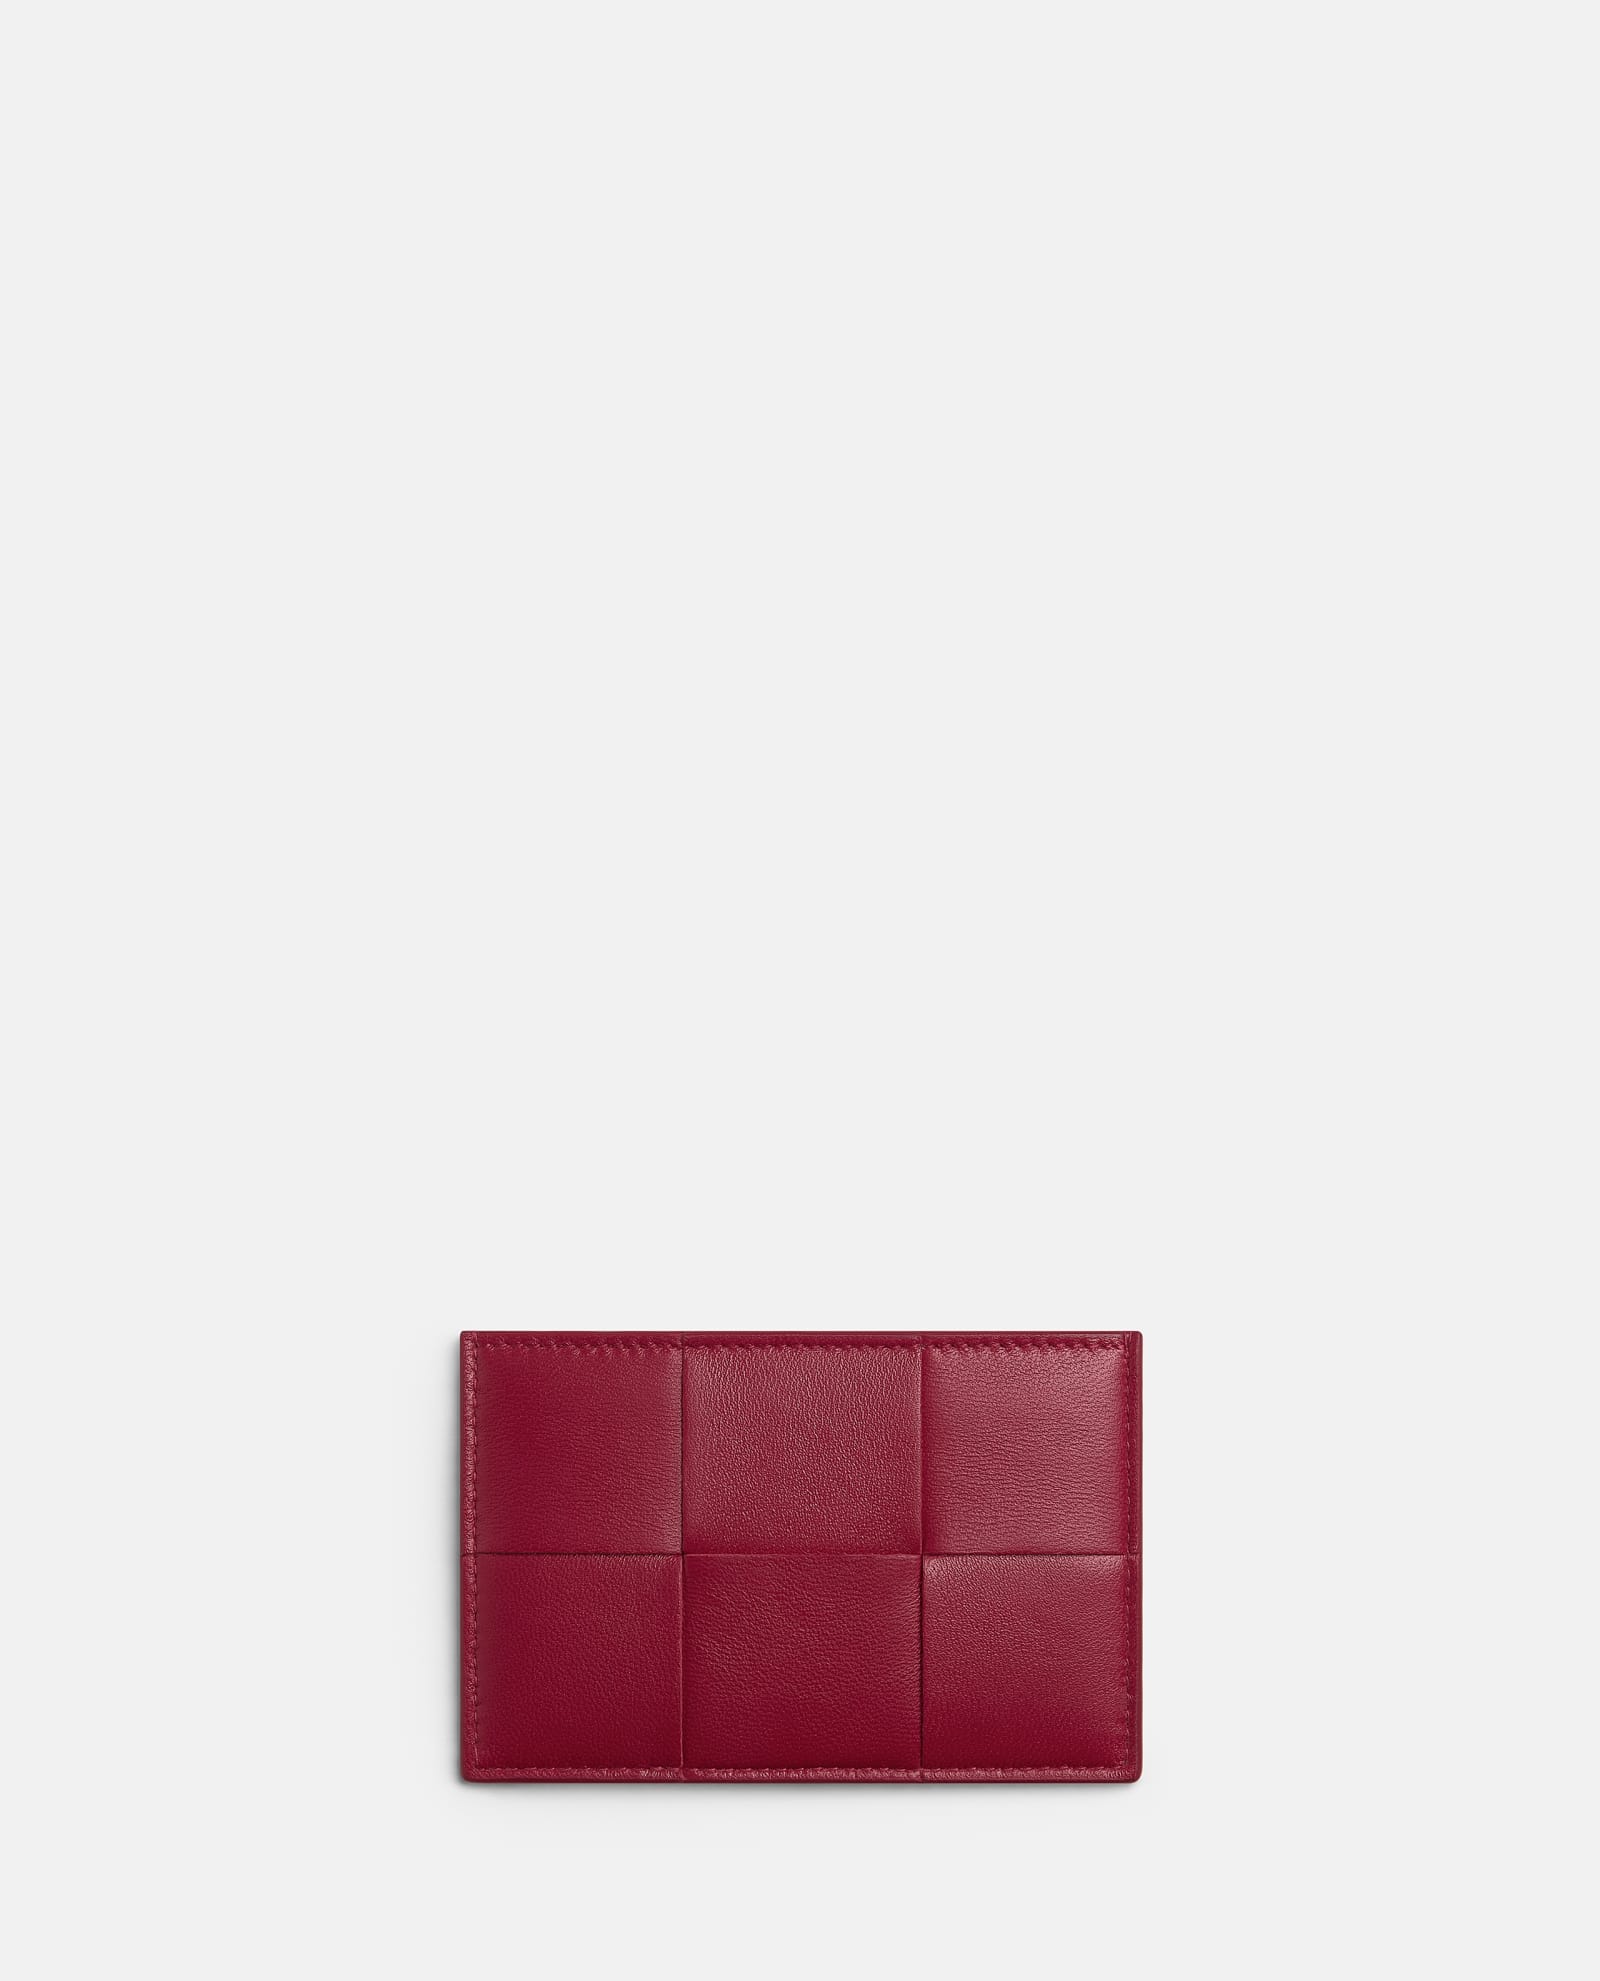 Bottega Veneta Bicolor Leather Cardholder In Burgundy